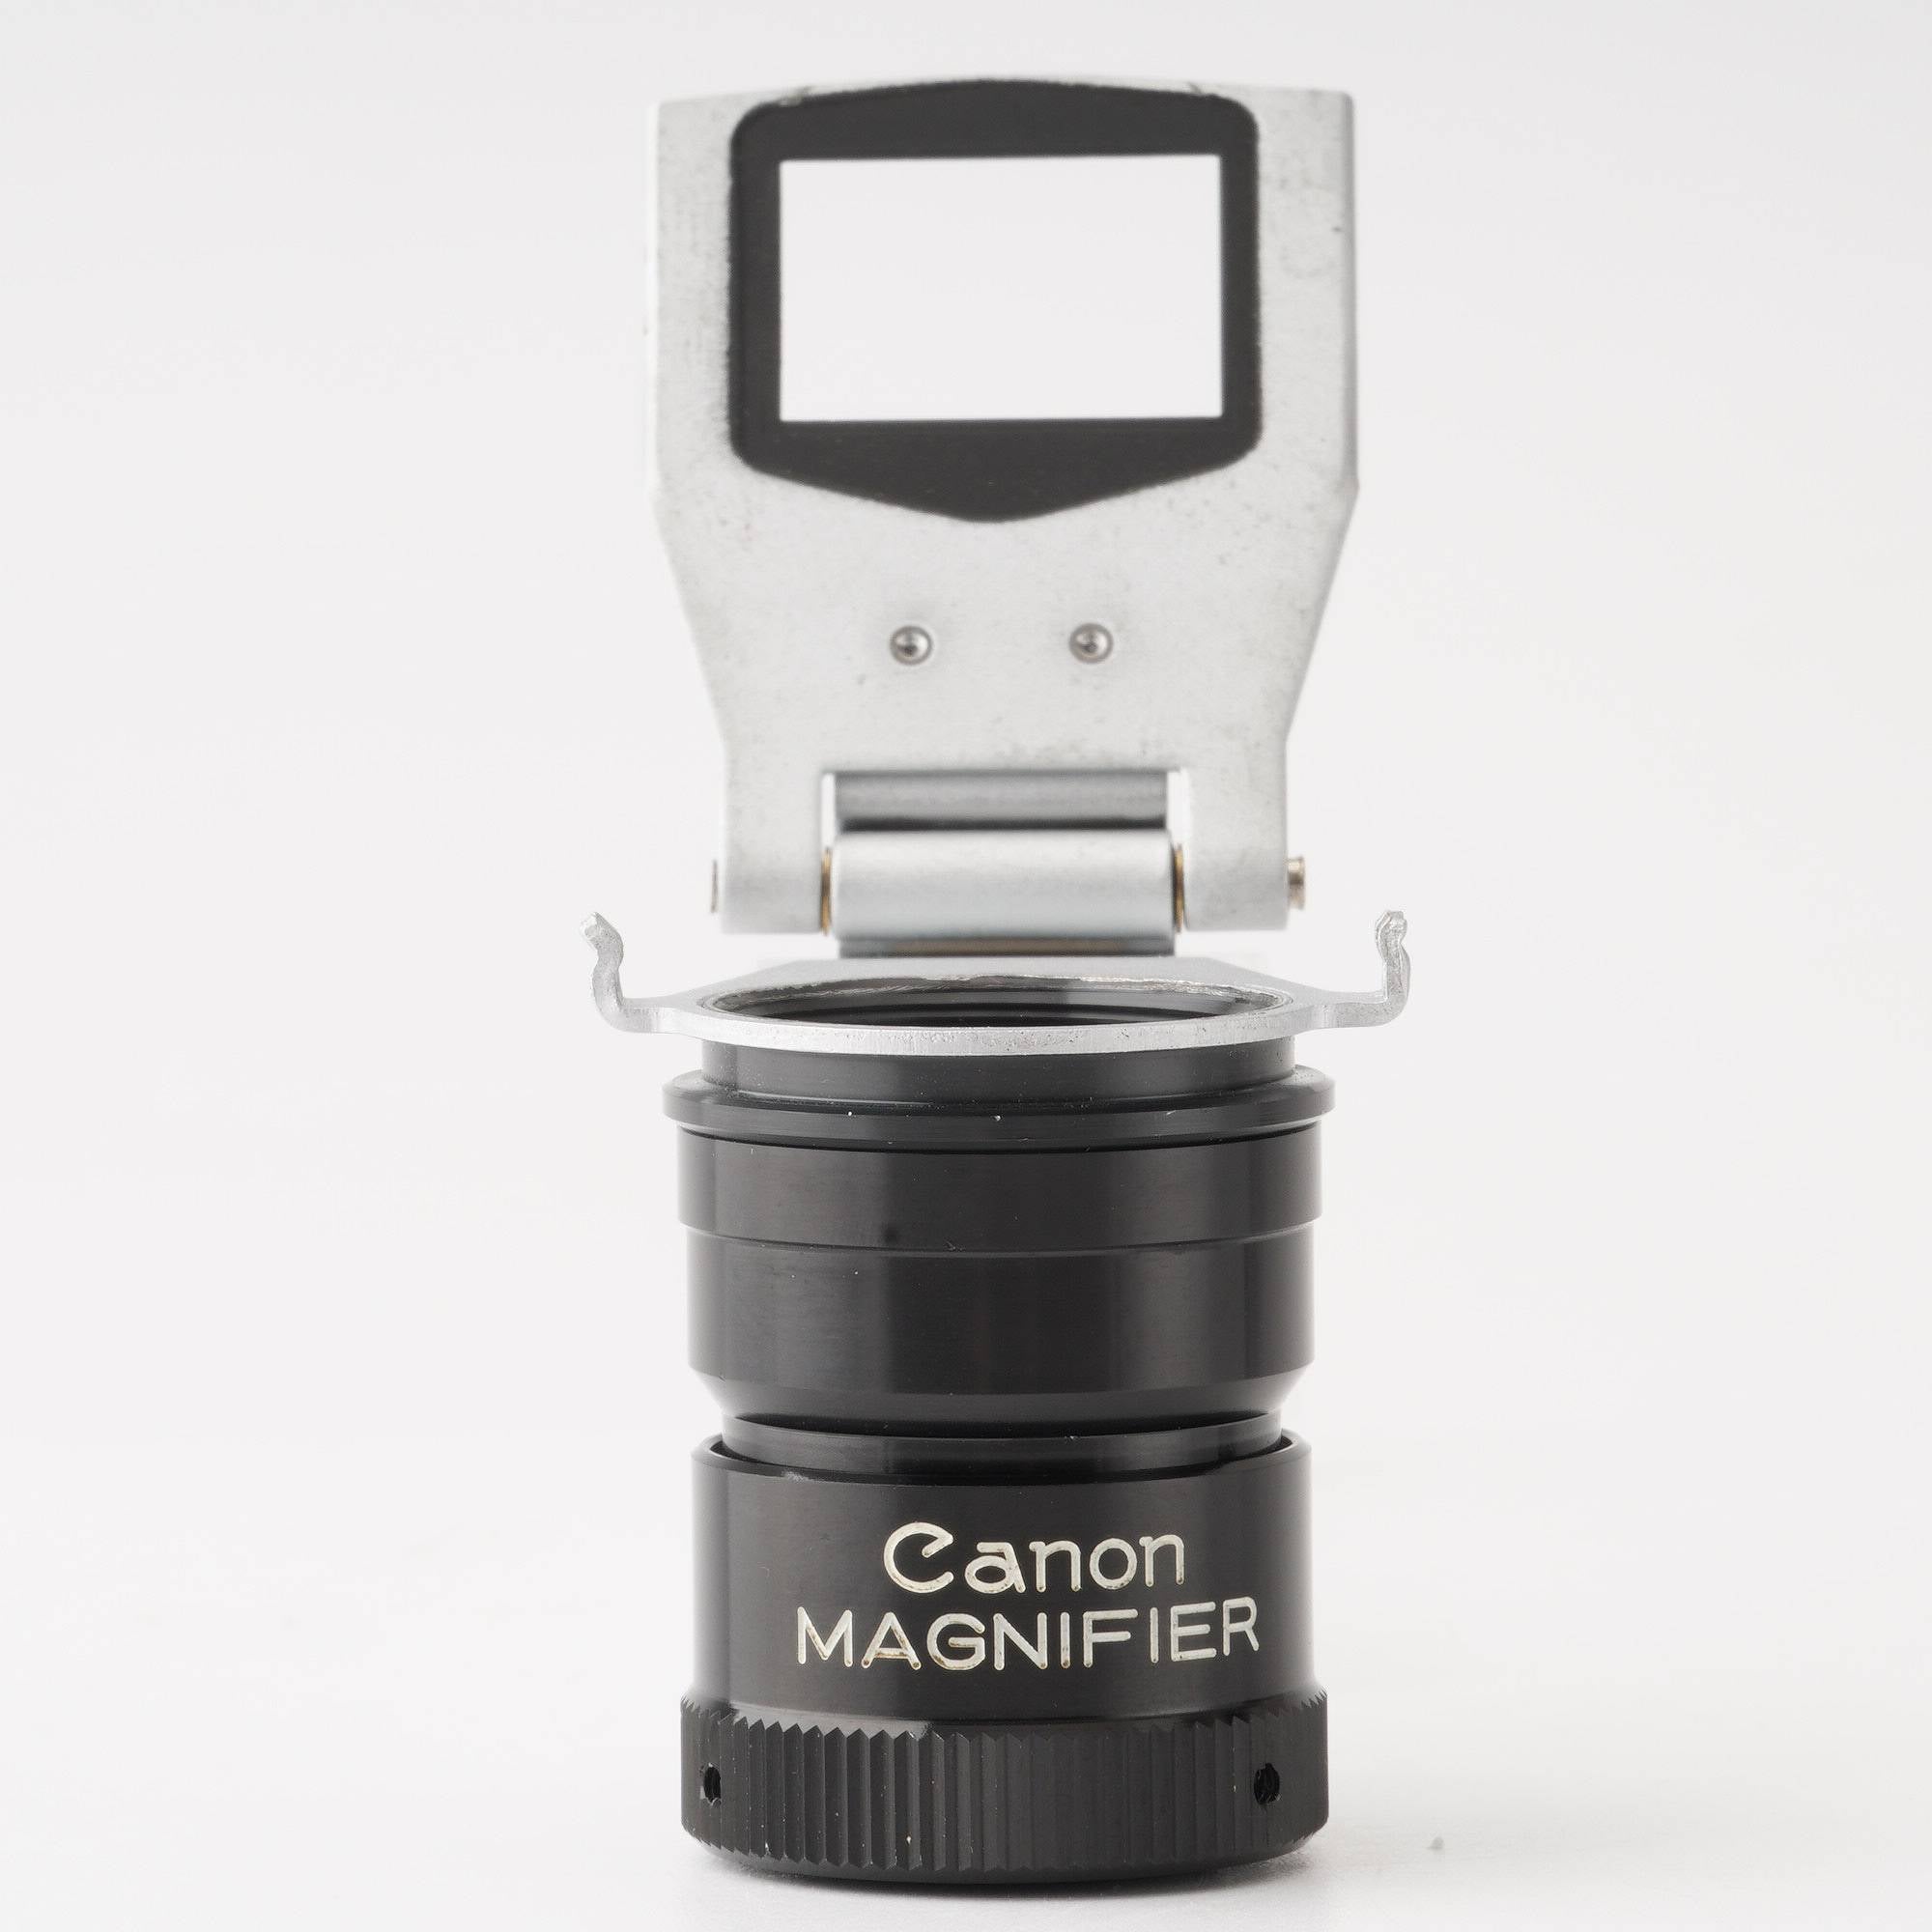 キヤノン Canon マグニファイヤー 拡大ファインダー S – Natural Camera / ナチュラルカメラ